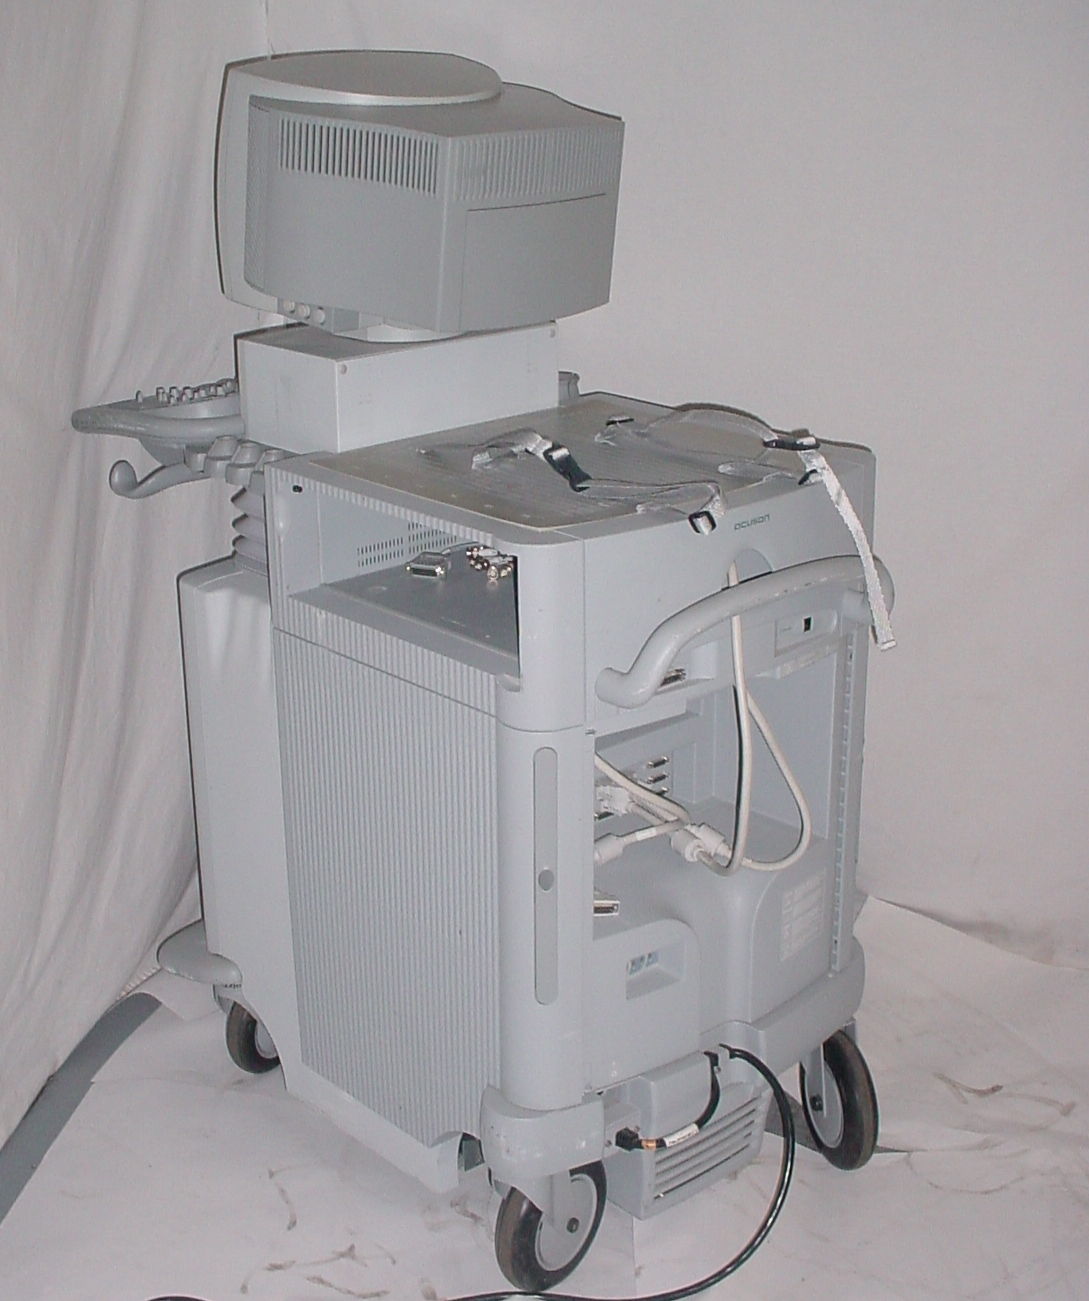 Acuson Sequoia C 256 Diagnostic Ultrasound Echocariography System C256 DIAGNOSTIC ULTRASOUND MACHINES FOR SALE